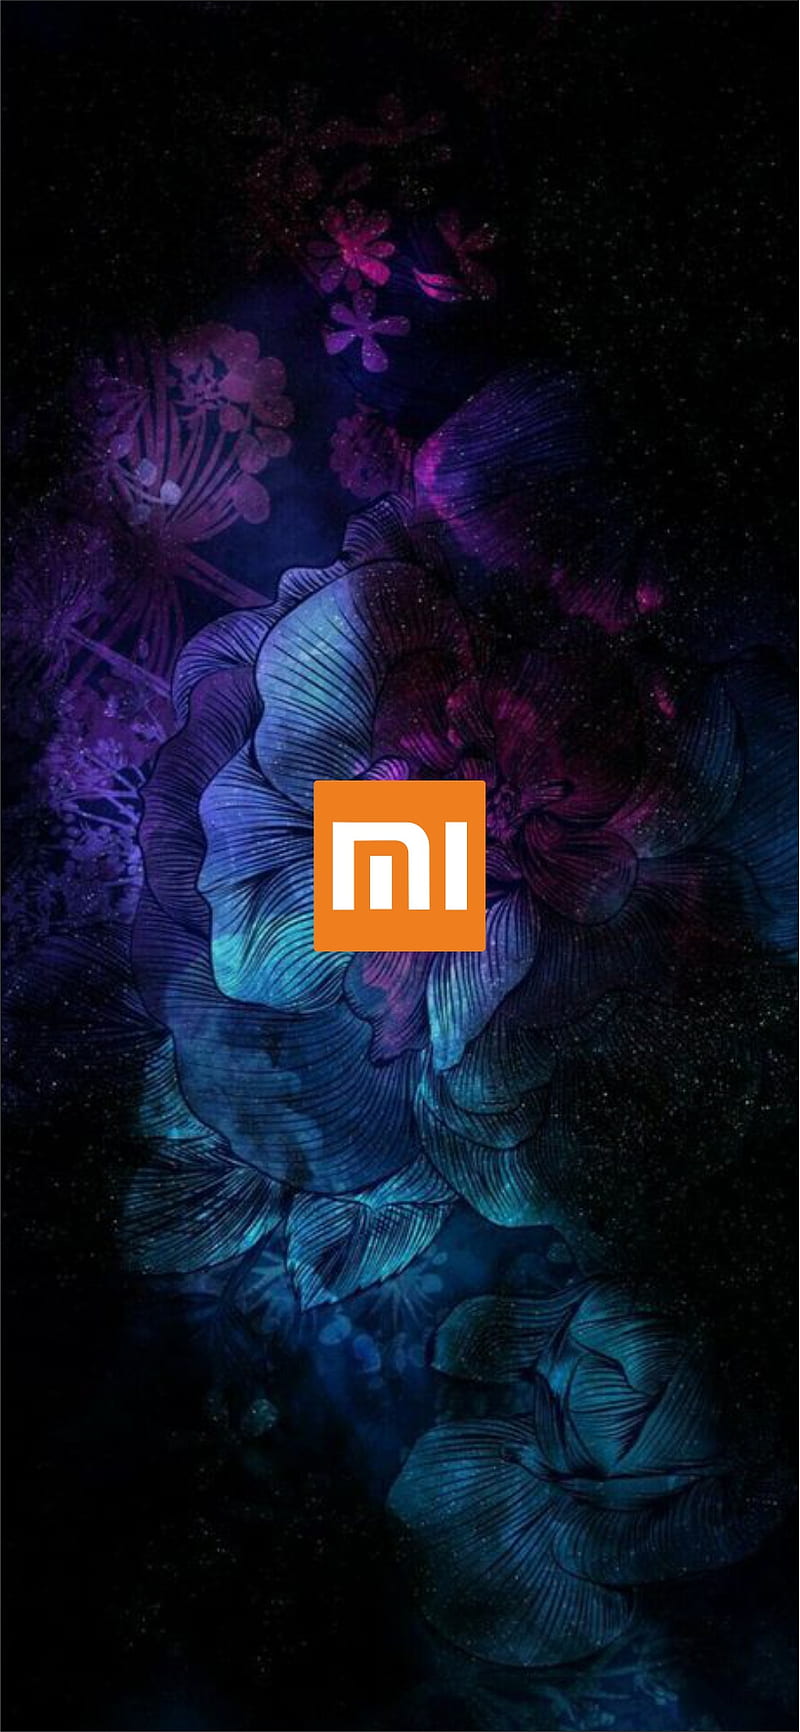 Để thể hiện tình yêu dành cho Xiaomi, các fan của hãng đã sáng tạo nên rất nhiều fan art đẹp mắt. Hãy thử sức với hình nền Xiaomi fan art để cảm nhận được sự độc đáo và sáng tạo của những fan hâm mộ này.